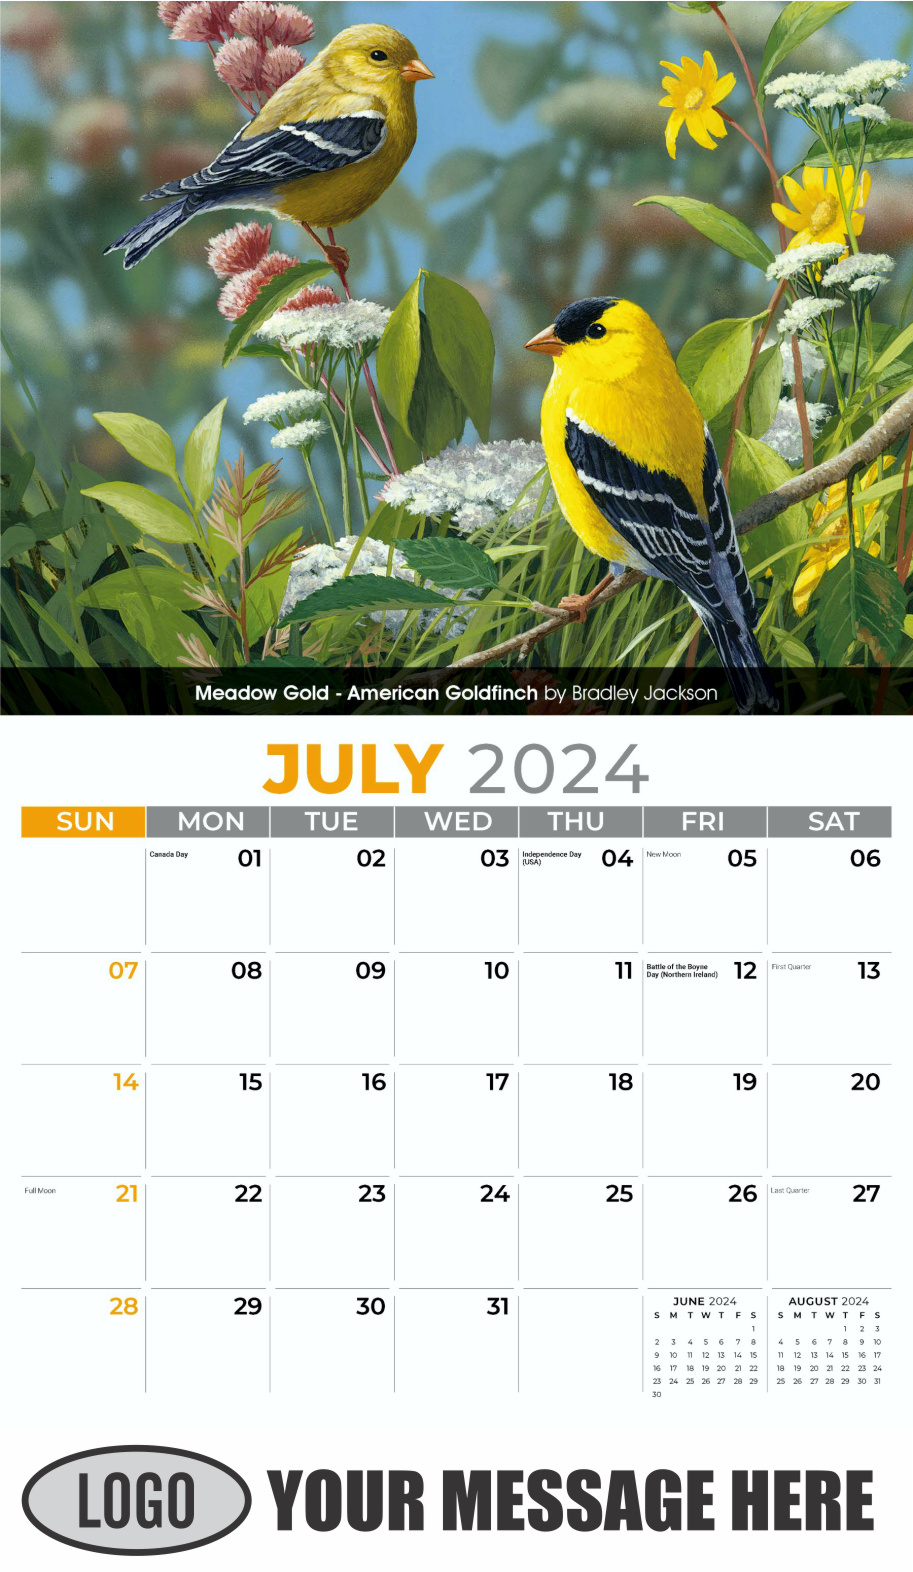 Garden Birds 2024 Business Promotional Calendar - July